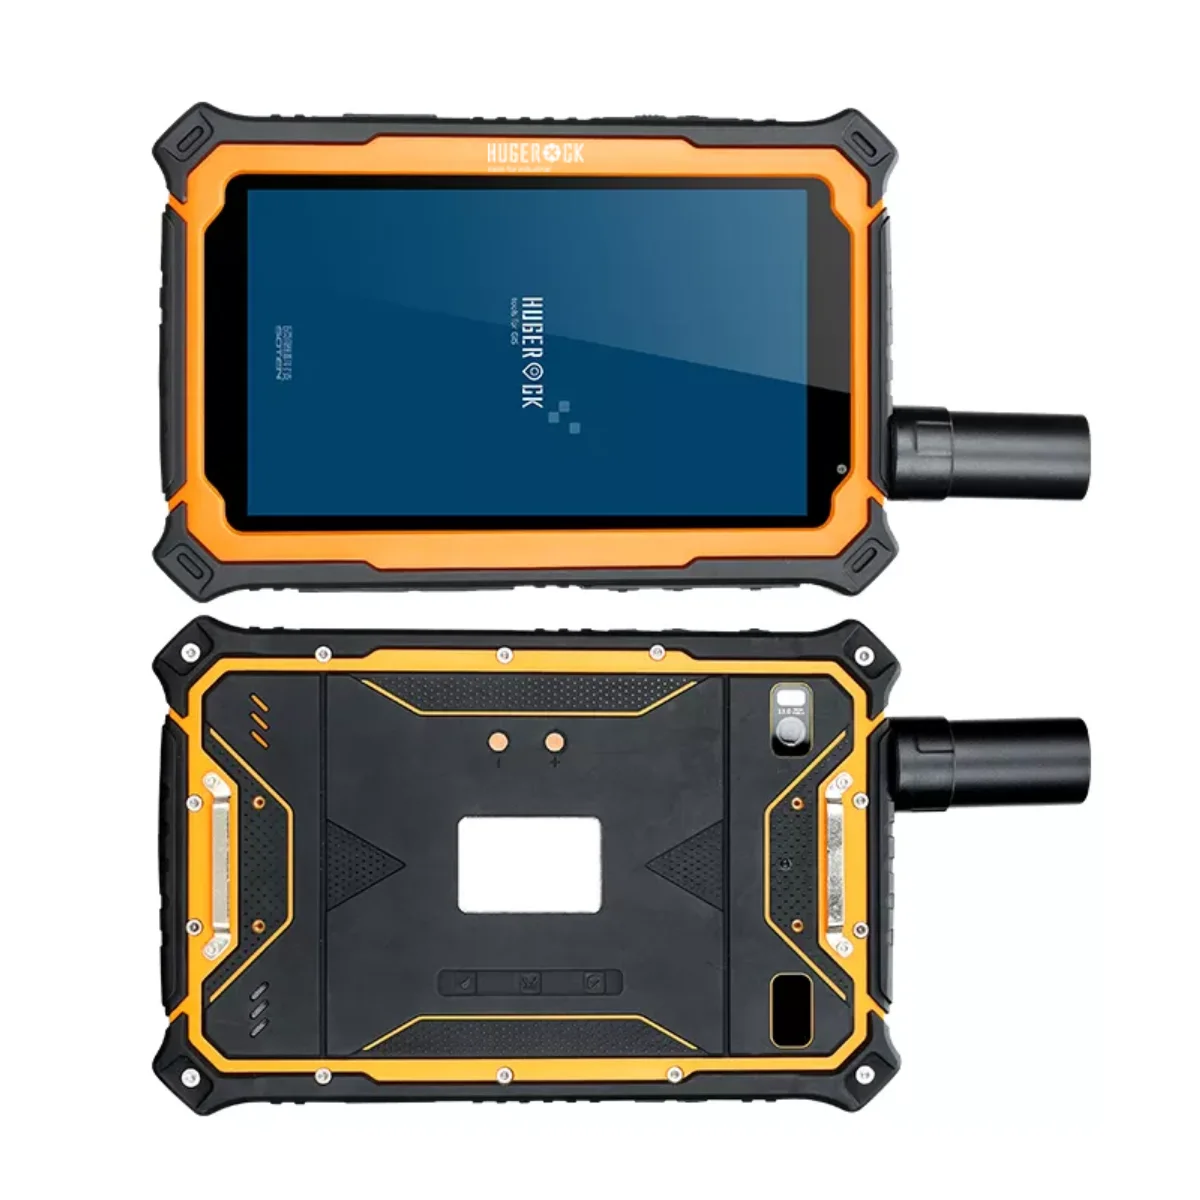 

HUGEROCK T71KF 1000 nit Gnss GPS RTK навигация и GPS промышленный Прочный планшет Android